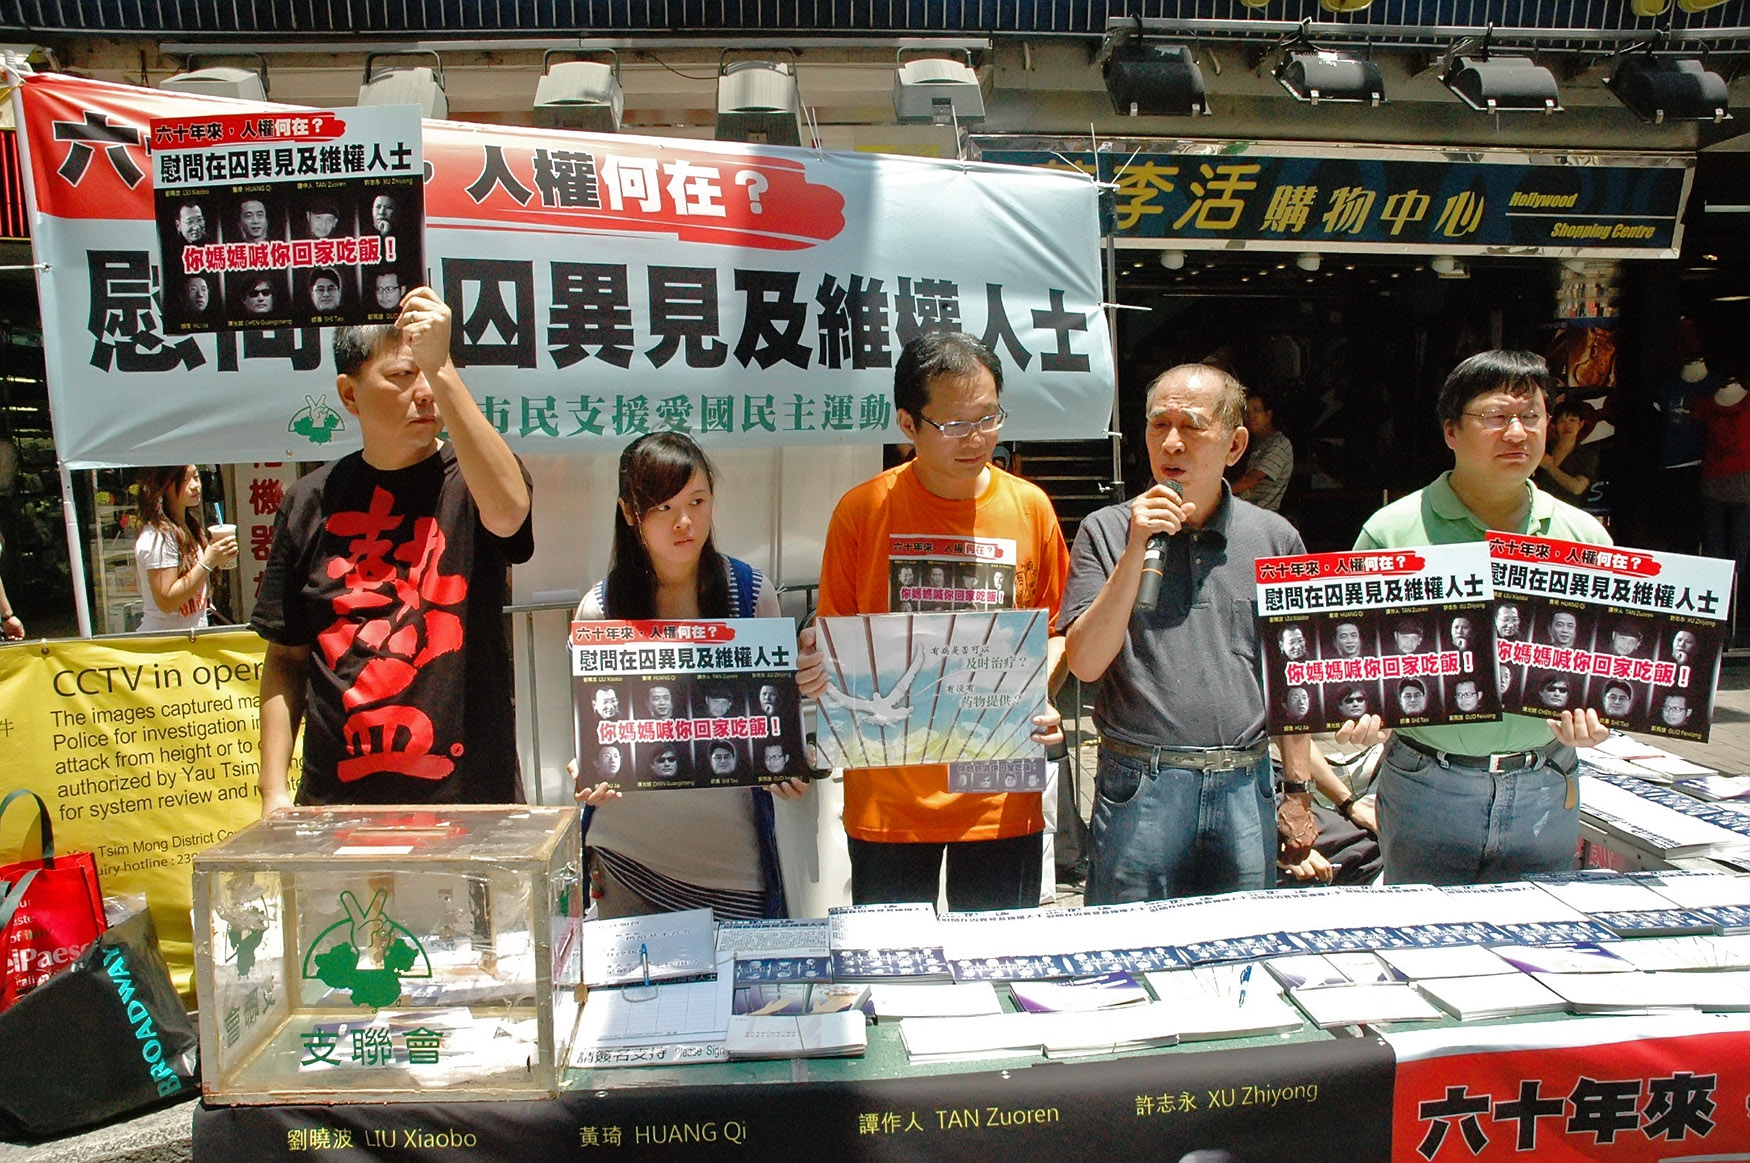 針對中共近期接連打壓包括維權律師許志永、「六四天網」黃琦和四川作家譚作人等人，香港支聯會從8月16日至10月3日，發起「慰問在囚異見和維權人士」簽明信片活動。